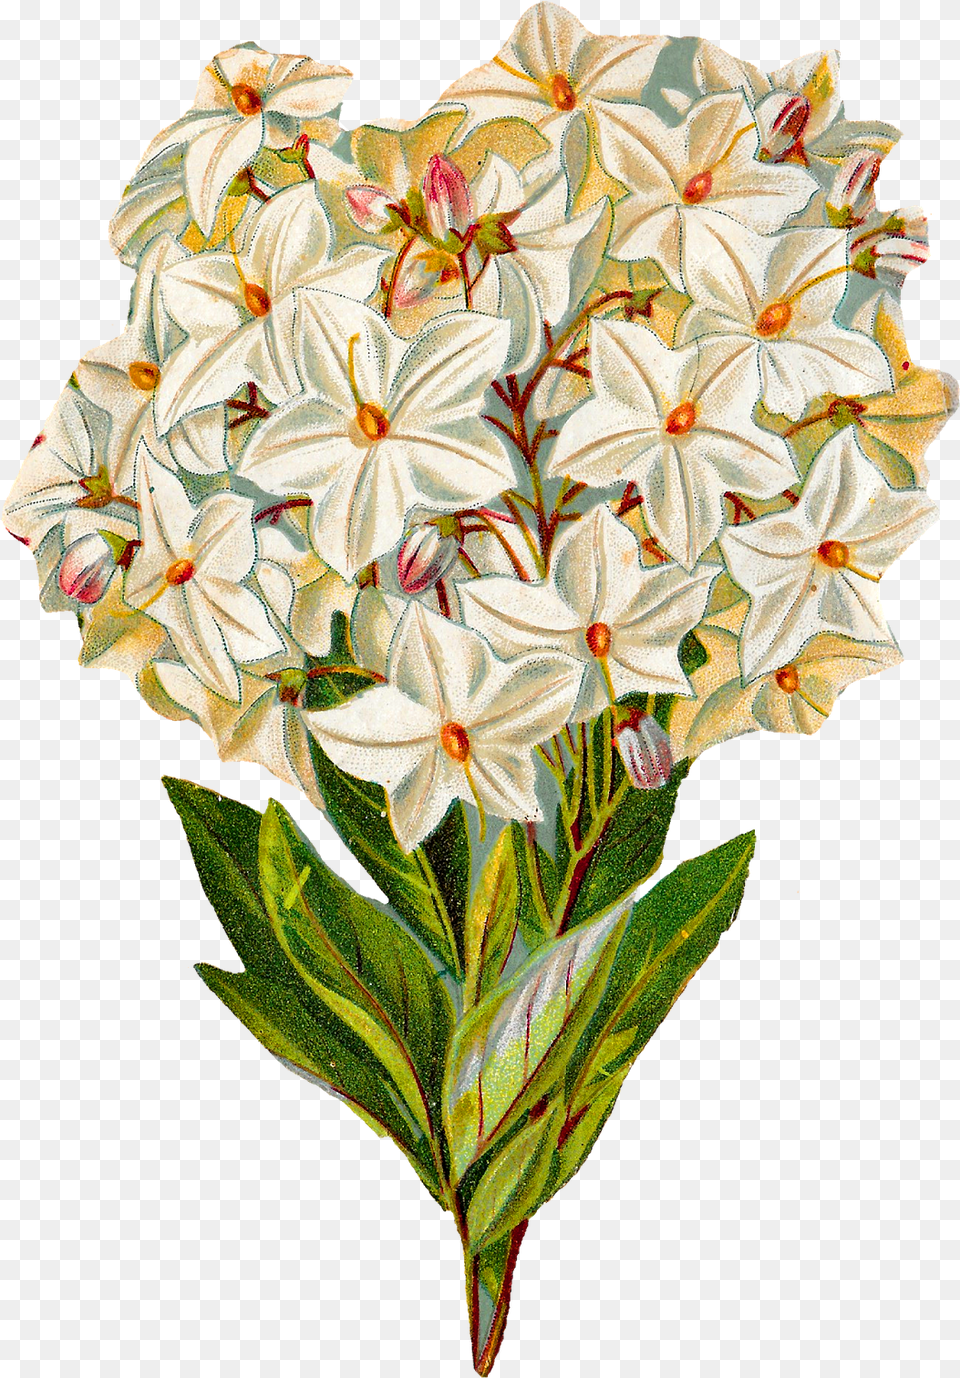 Antique Images Flower Illustration Vintage Botanical Art, Pattern, Graphics, Plant, Floral Design Png